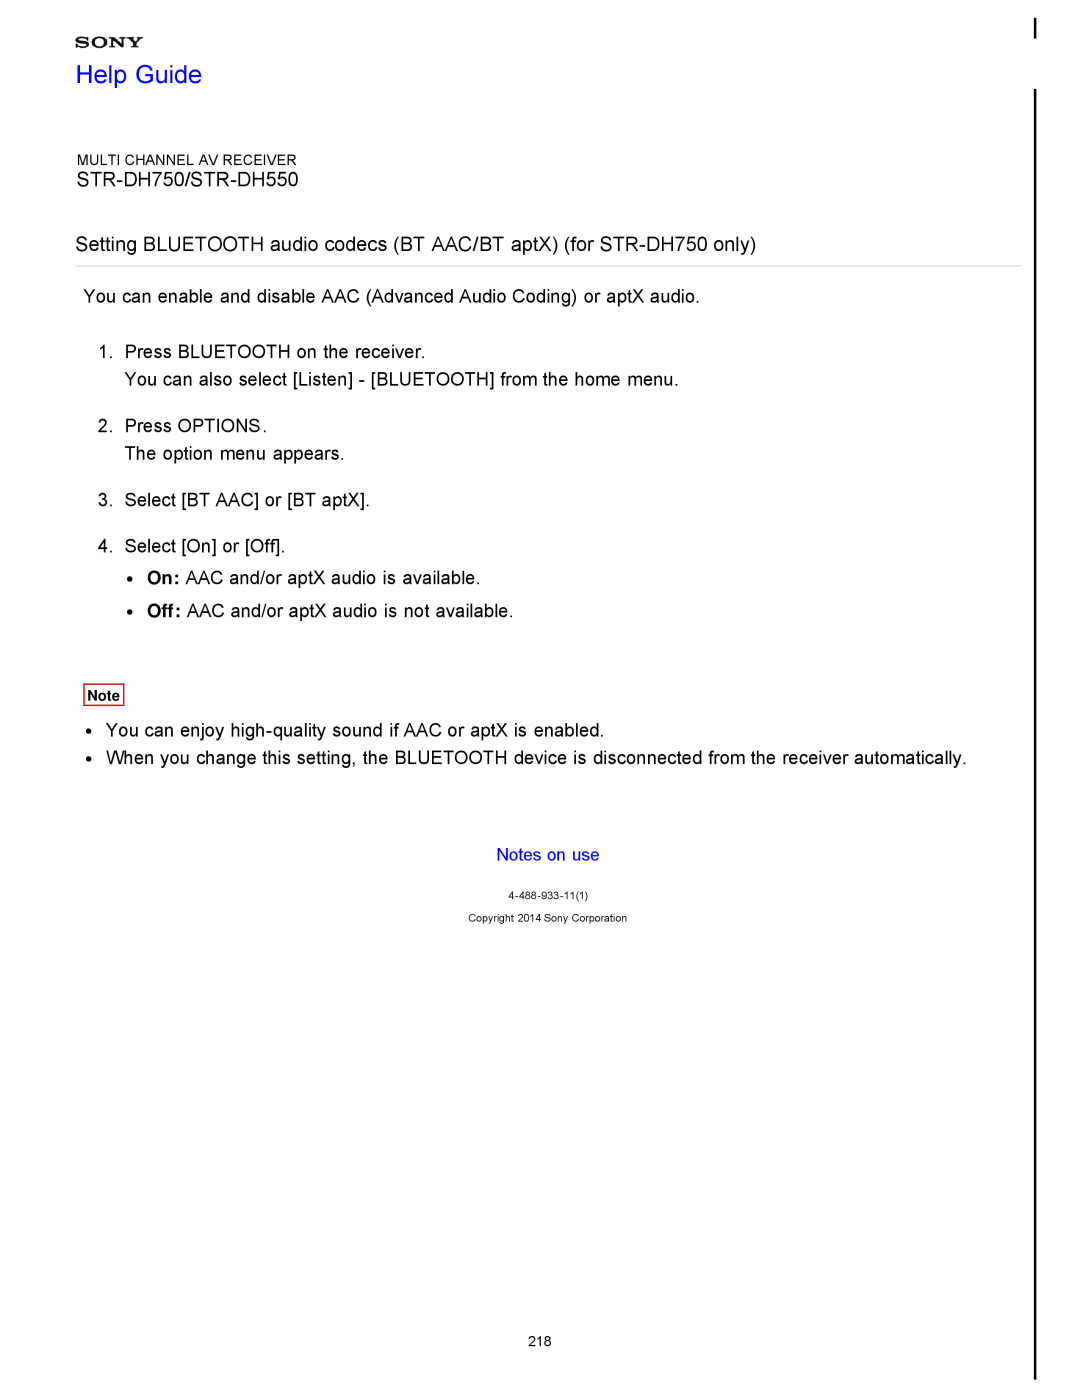 Sony STR-FH750 manual Help Guide, STR-DH750/STR-DH550 